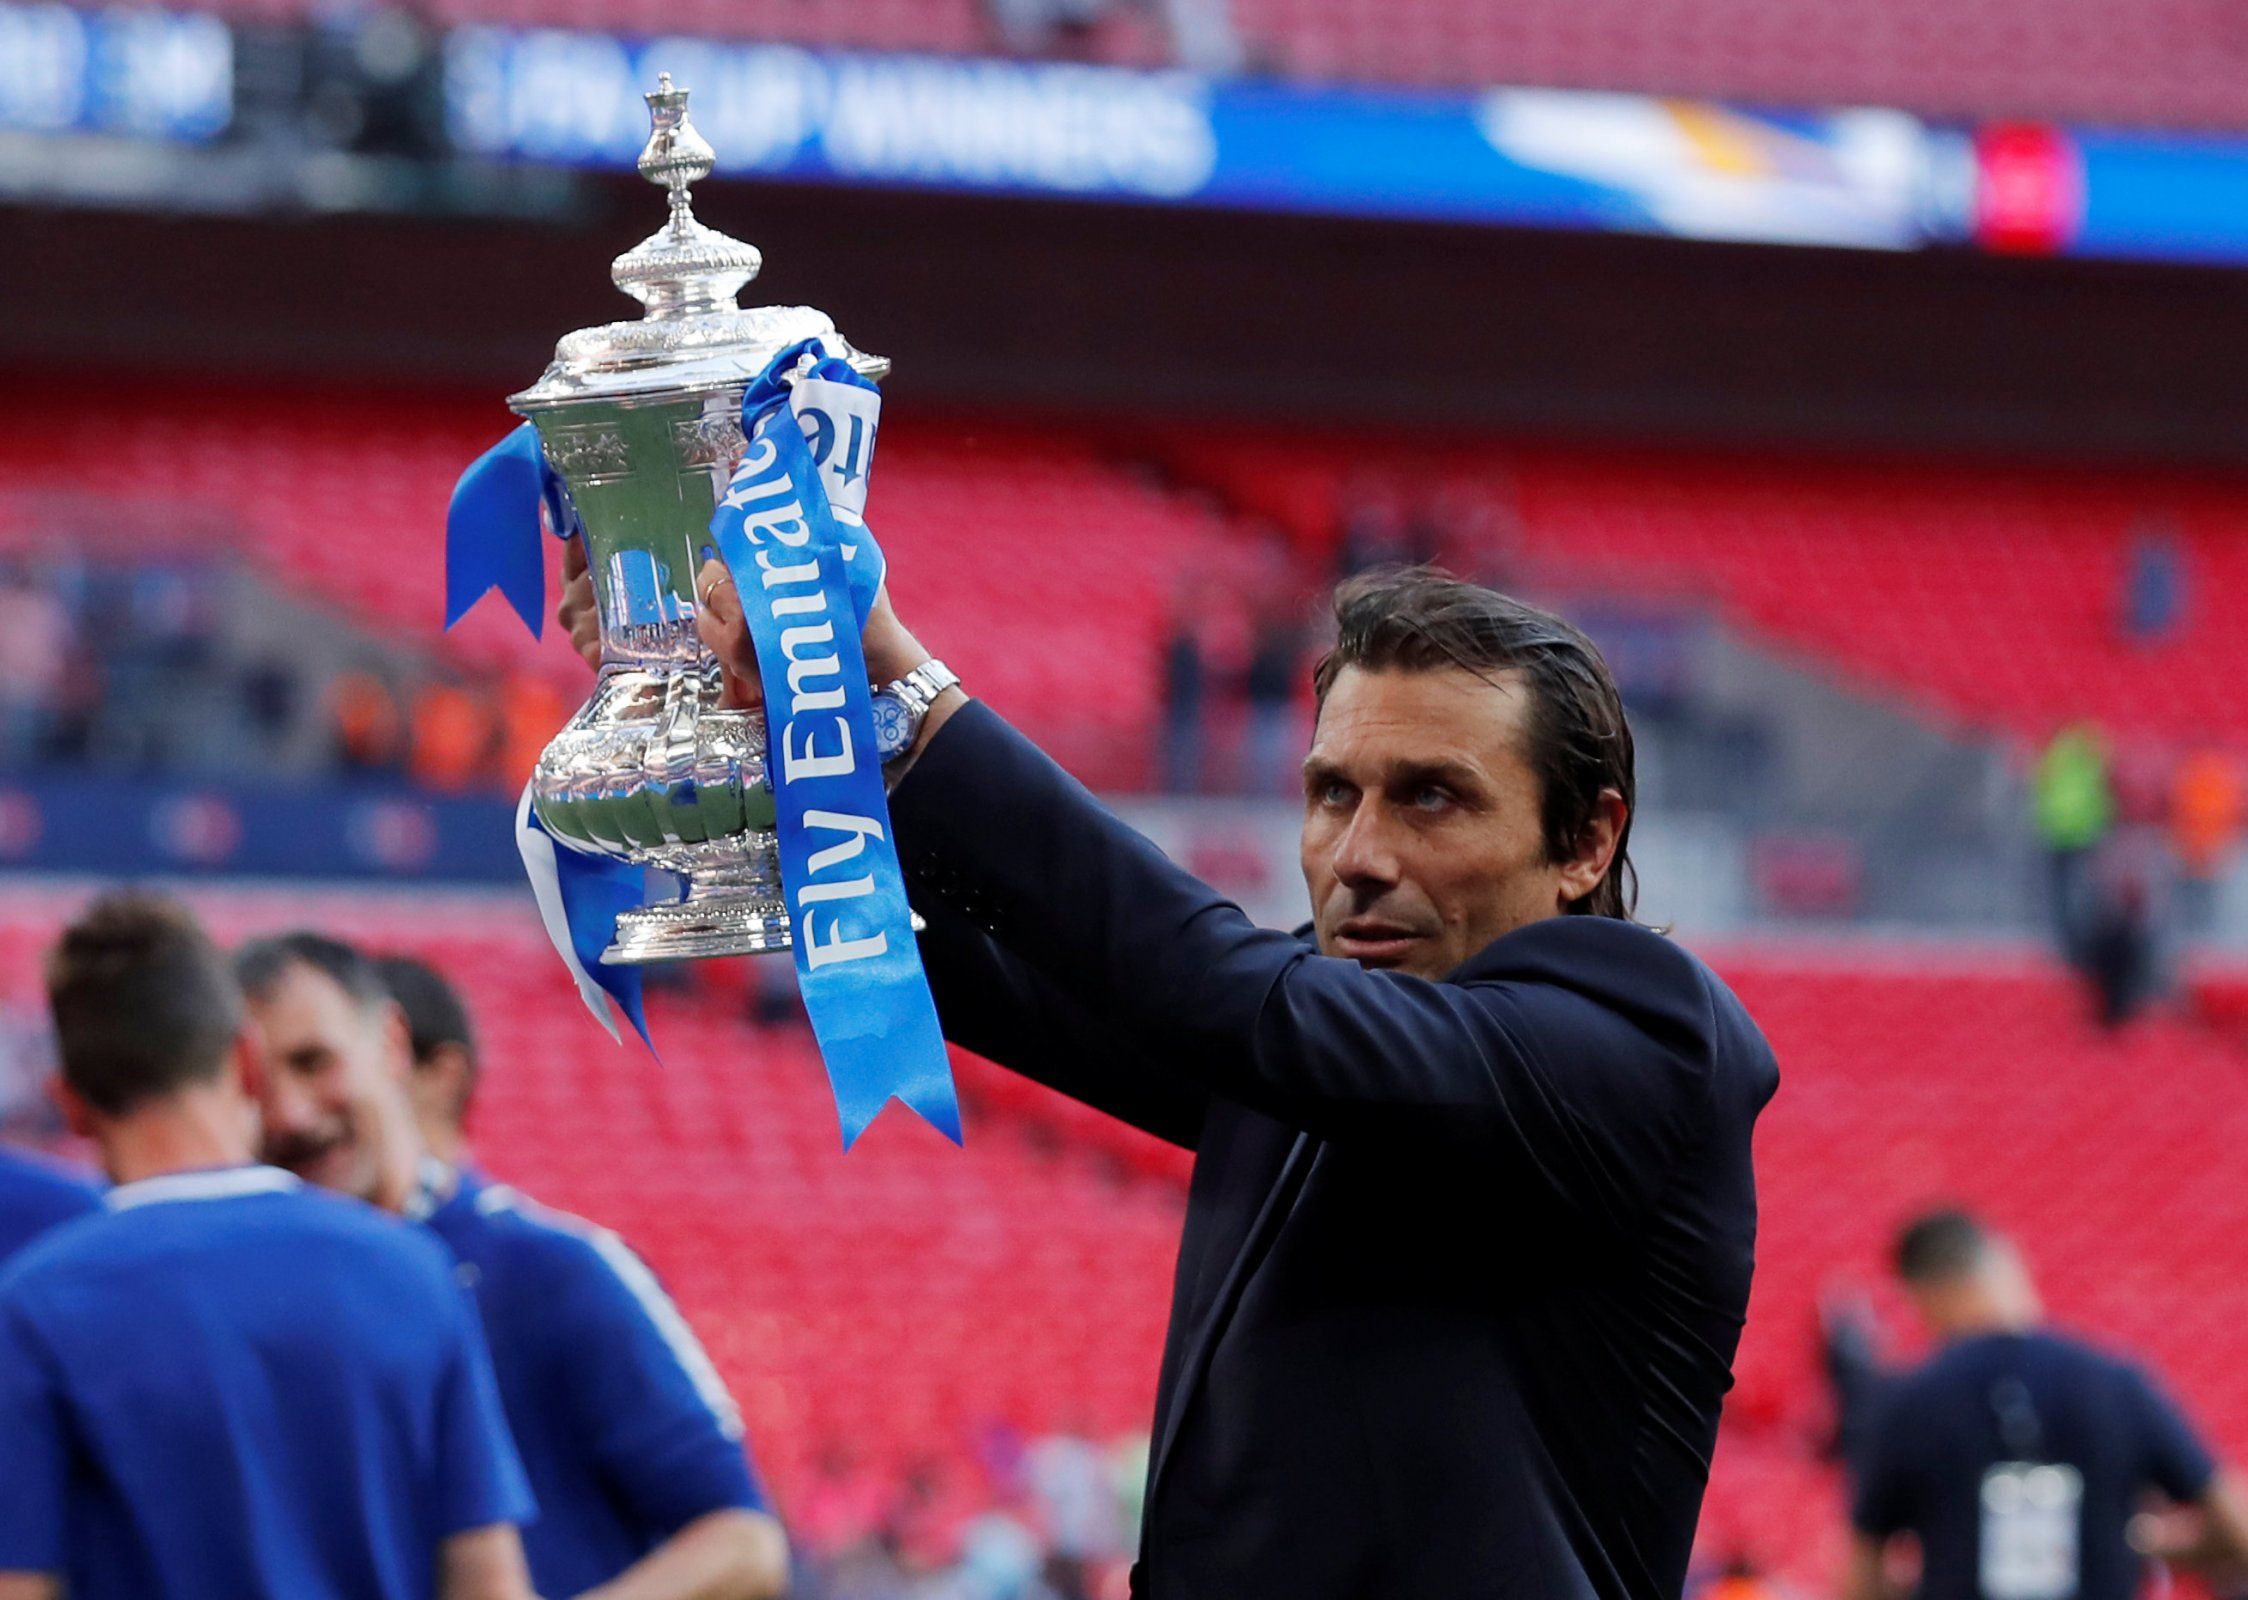 Antonio Conte lifts the FA Cup